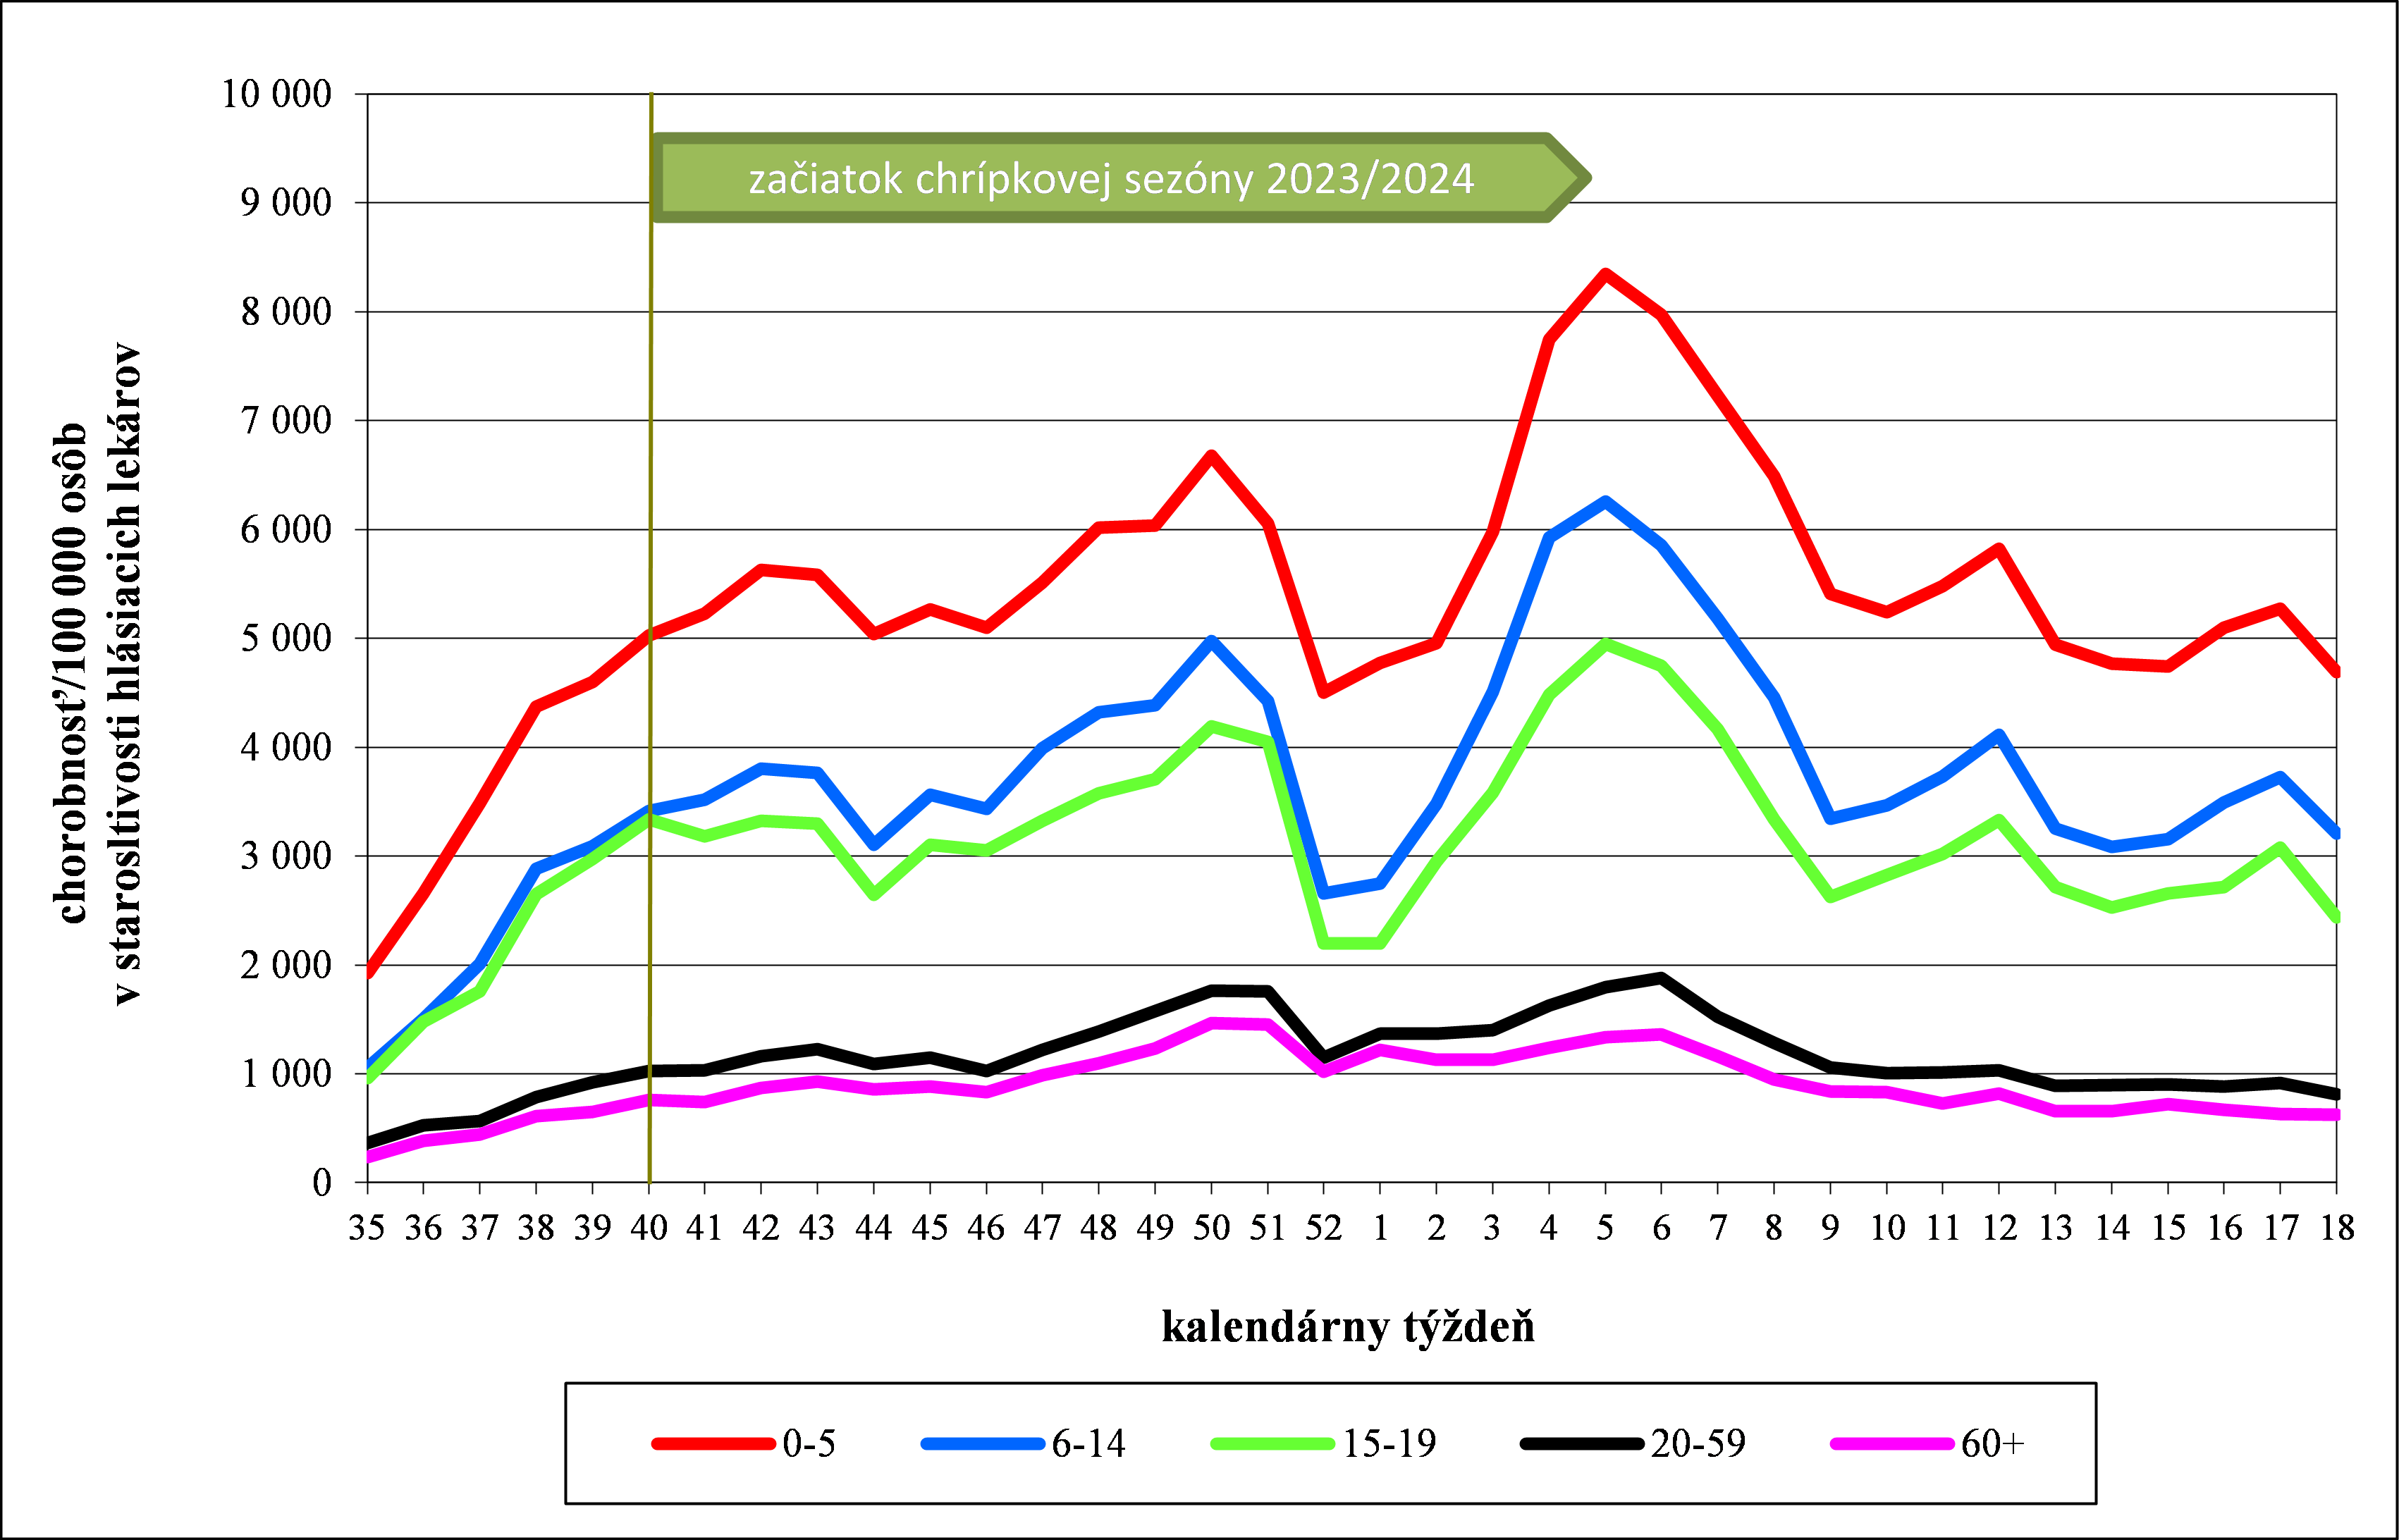 Graf: Vývoj chorobnosti na ARO v chrípkovej sezóne 2023/2024 podľa vekových skupín